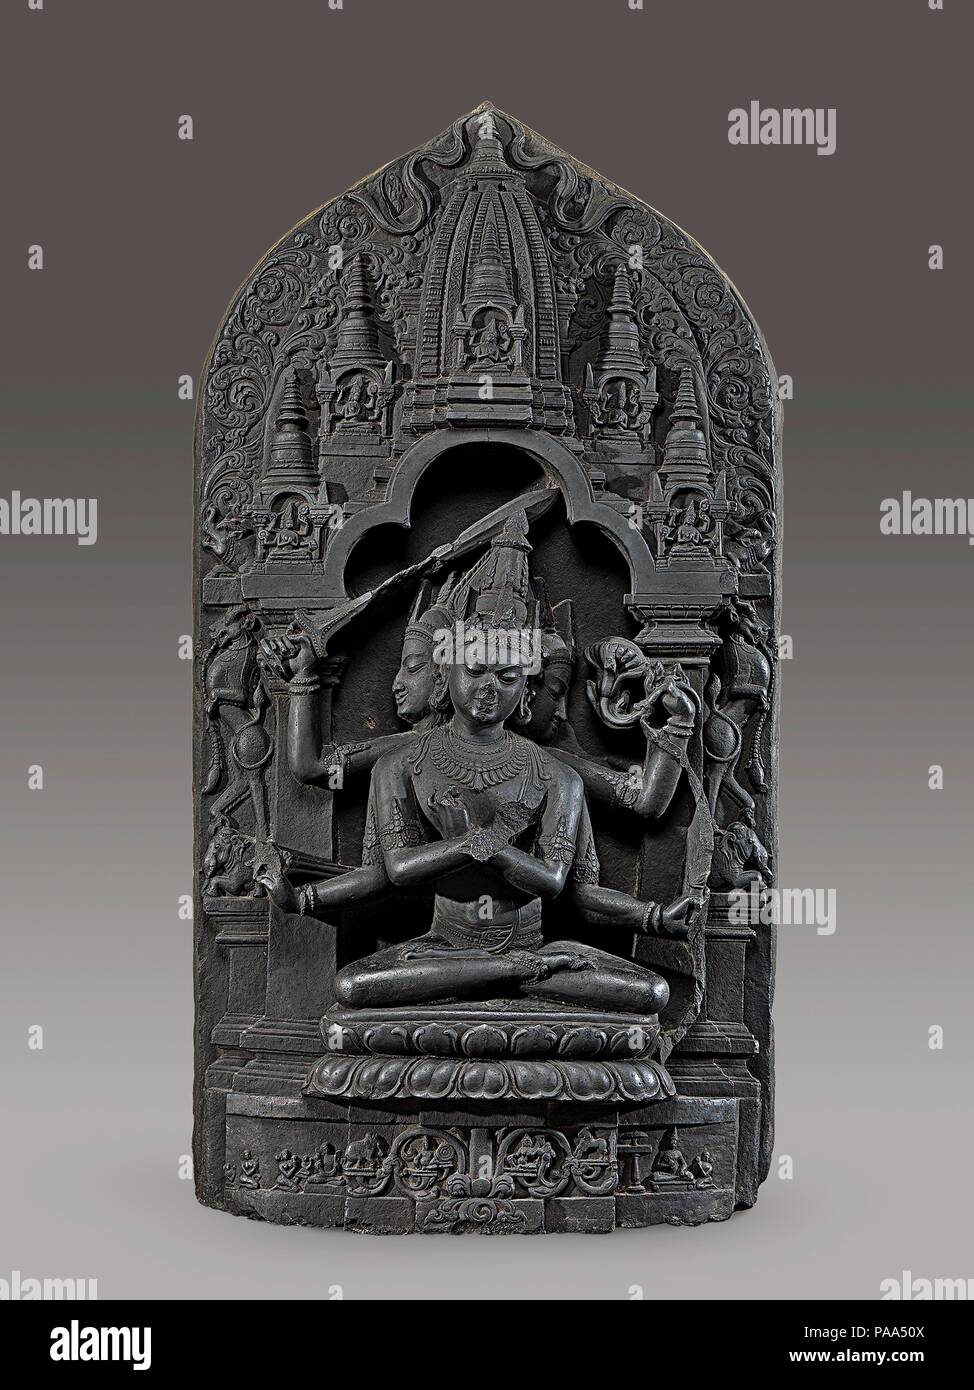 Manjuvajra Mandala. Kultur: Bangladesch oder Indien (Bengalen). Abmessungen: H. 46in. (116,8 cm); W. 24. (61 cm); D.7 1/2 in. (19,1 cm). Datum: 11. Diese Skulptur ist eine esoterische Form des Manjushri ist der Bodhisattva des transzendente Weisheit. Er hat drei Köpfe und sechs Arme; vier halten Sie mit Pfeil und Bogen, Schwert und Lotus, während die restlichen zwei vajras (thunderbolt Zepter) und werden an der Brust in einem esoterischen Geste gekreuzt (Mudra) Ermittlung höchste Weisheit. Im Vordergrund dieses Array von Waffen ist das Schwert, das Kürzungen Unwissenheit und Täuschung. Leogryphs ständigen o Stockfoto